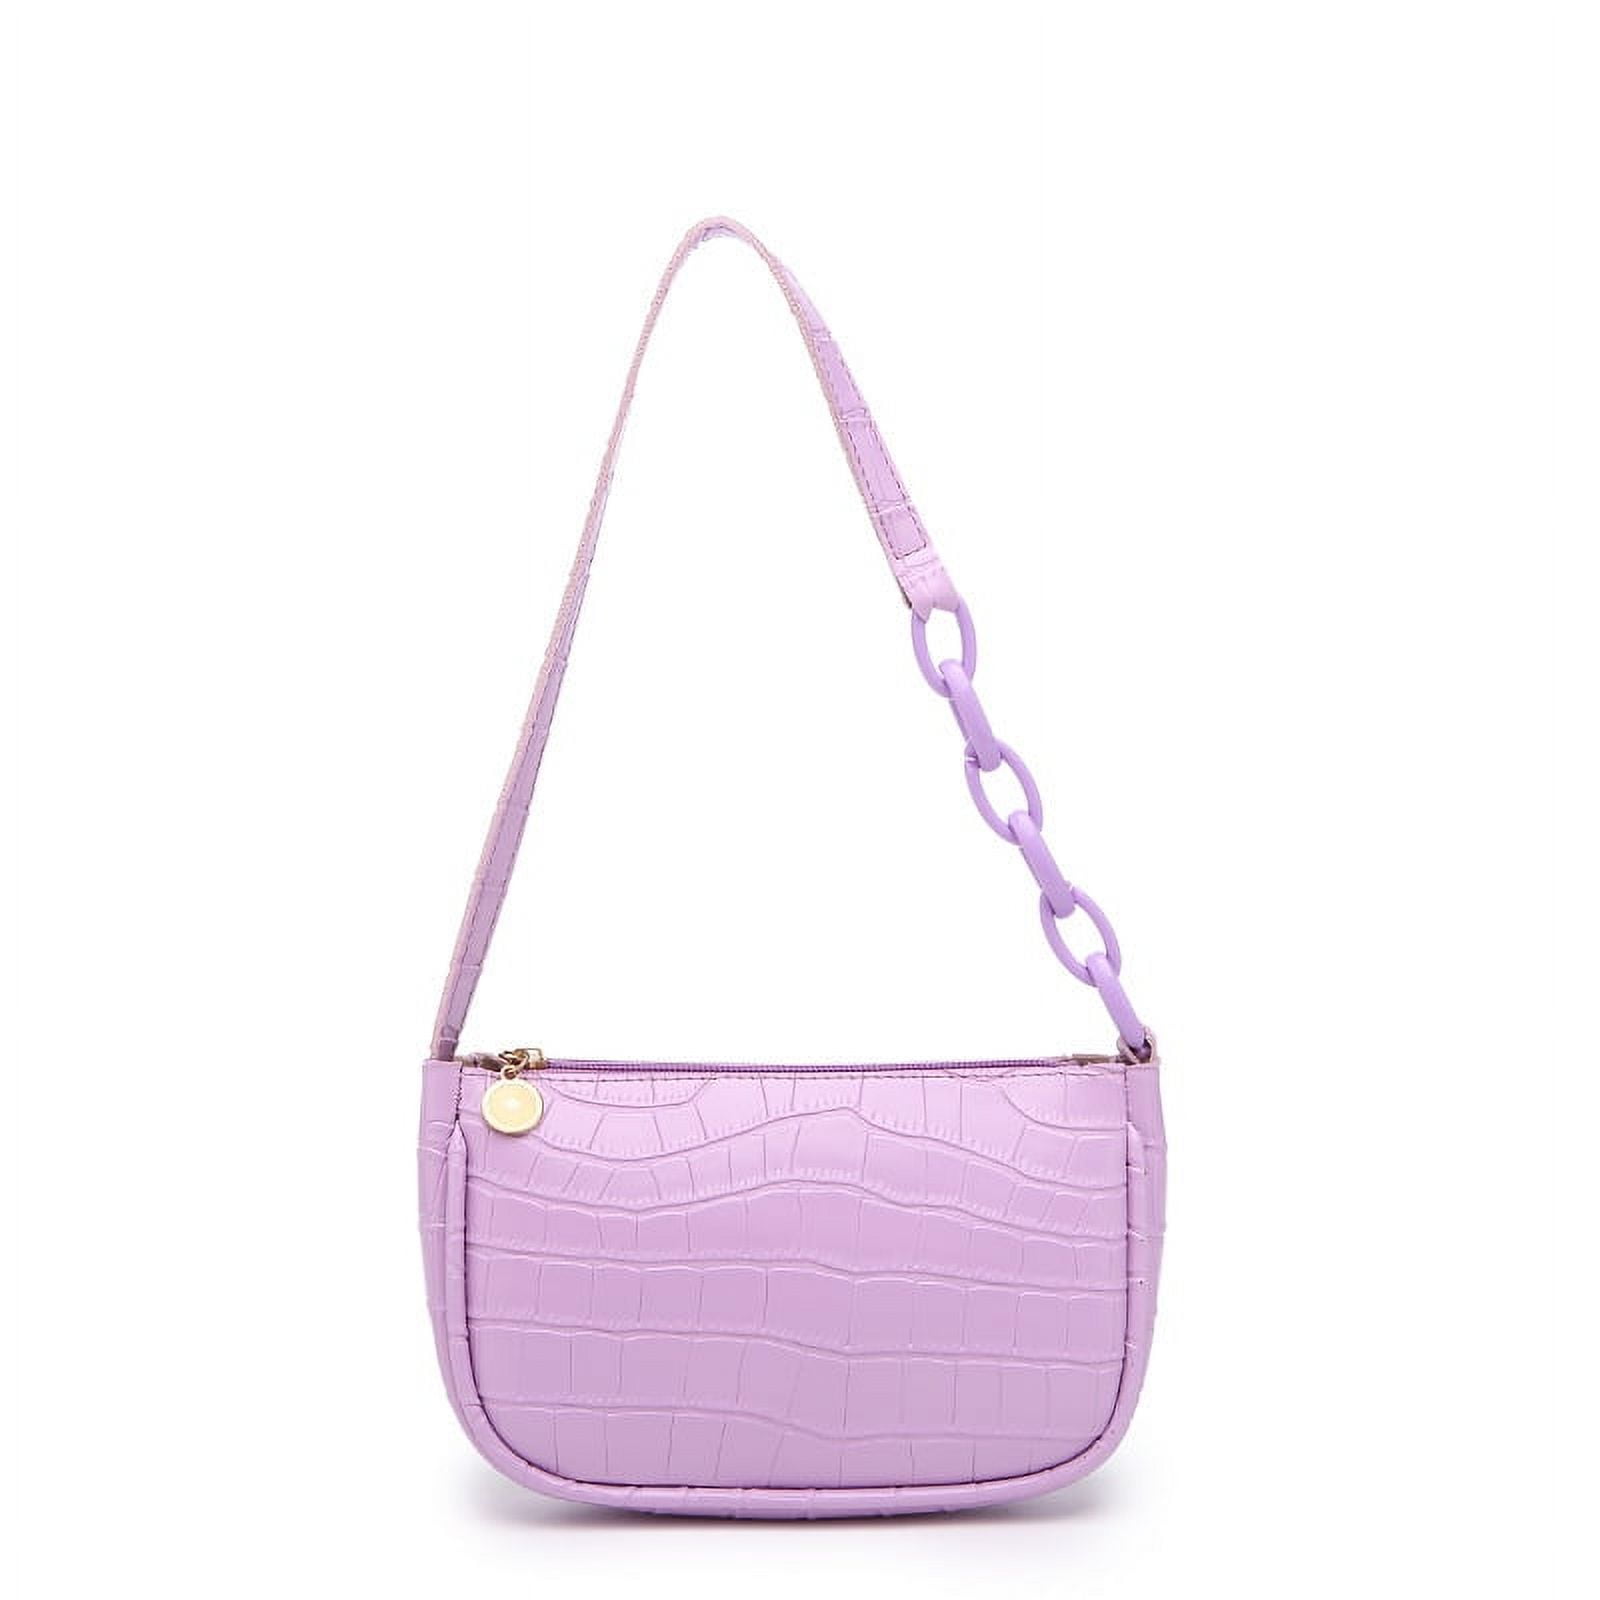 Fashion Simple Crocodile Grain Cute Purses Handbags Shoulder Bag Underarm  Bags | eBay